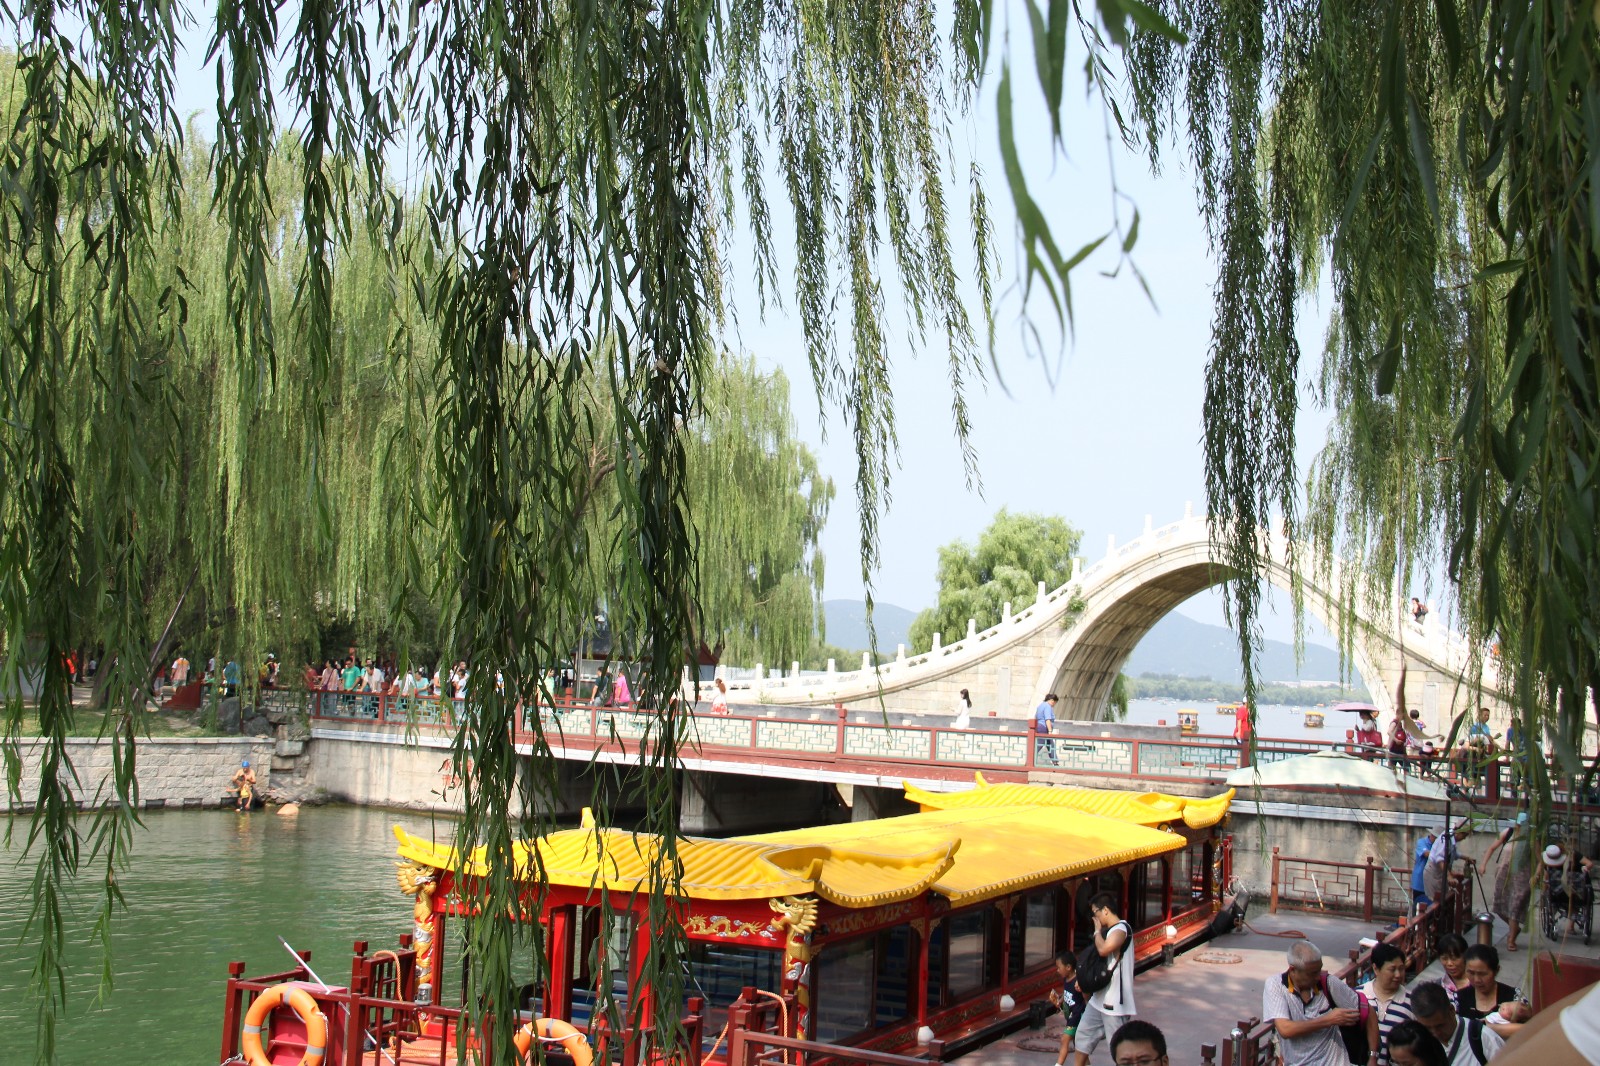 景点 : 皇家御河游船 乘坐皇家御河游船,途径紫竹院公园,颐和园